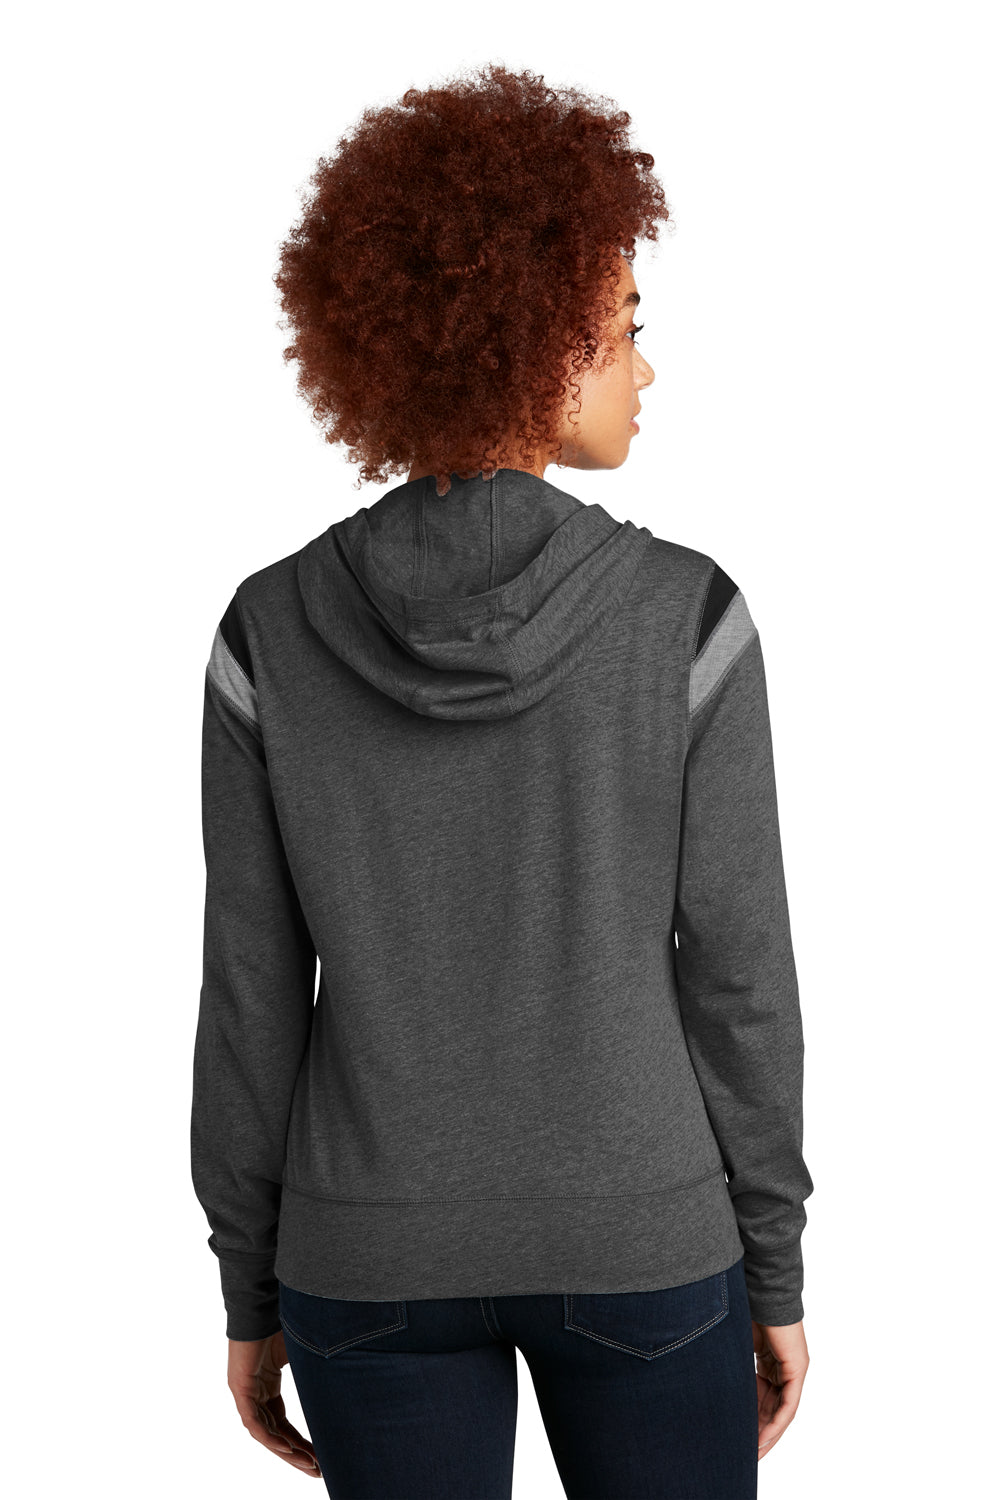 New Era Womens Heritage Varsity Hooded Sweatshirt Hoodie Heather Black/Black/Heather Shadow Grey Side